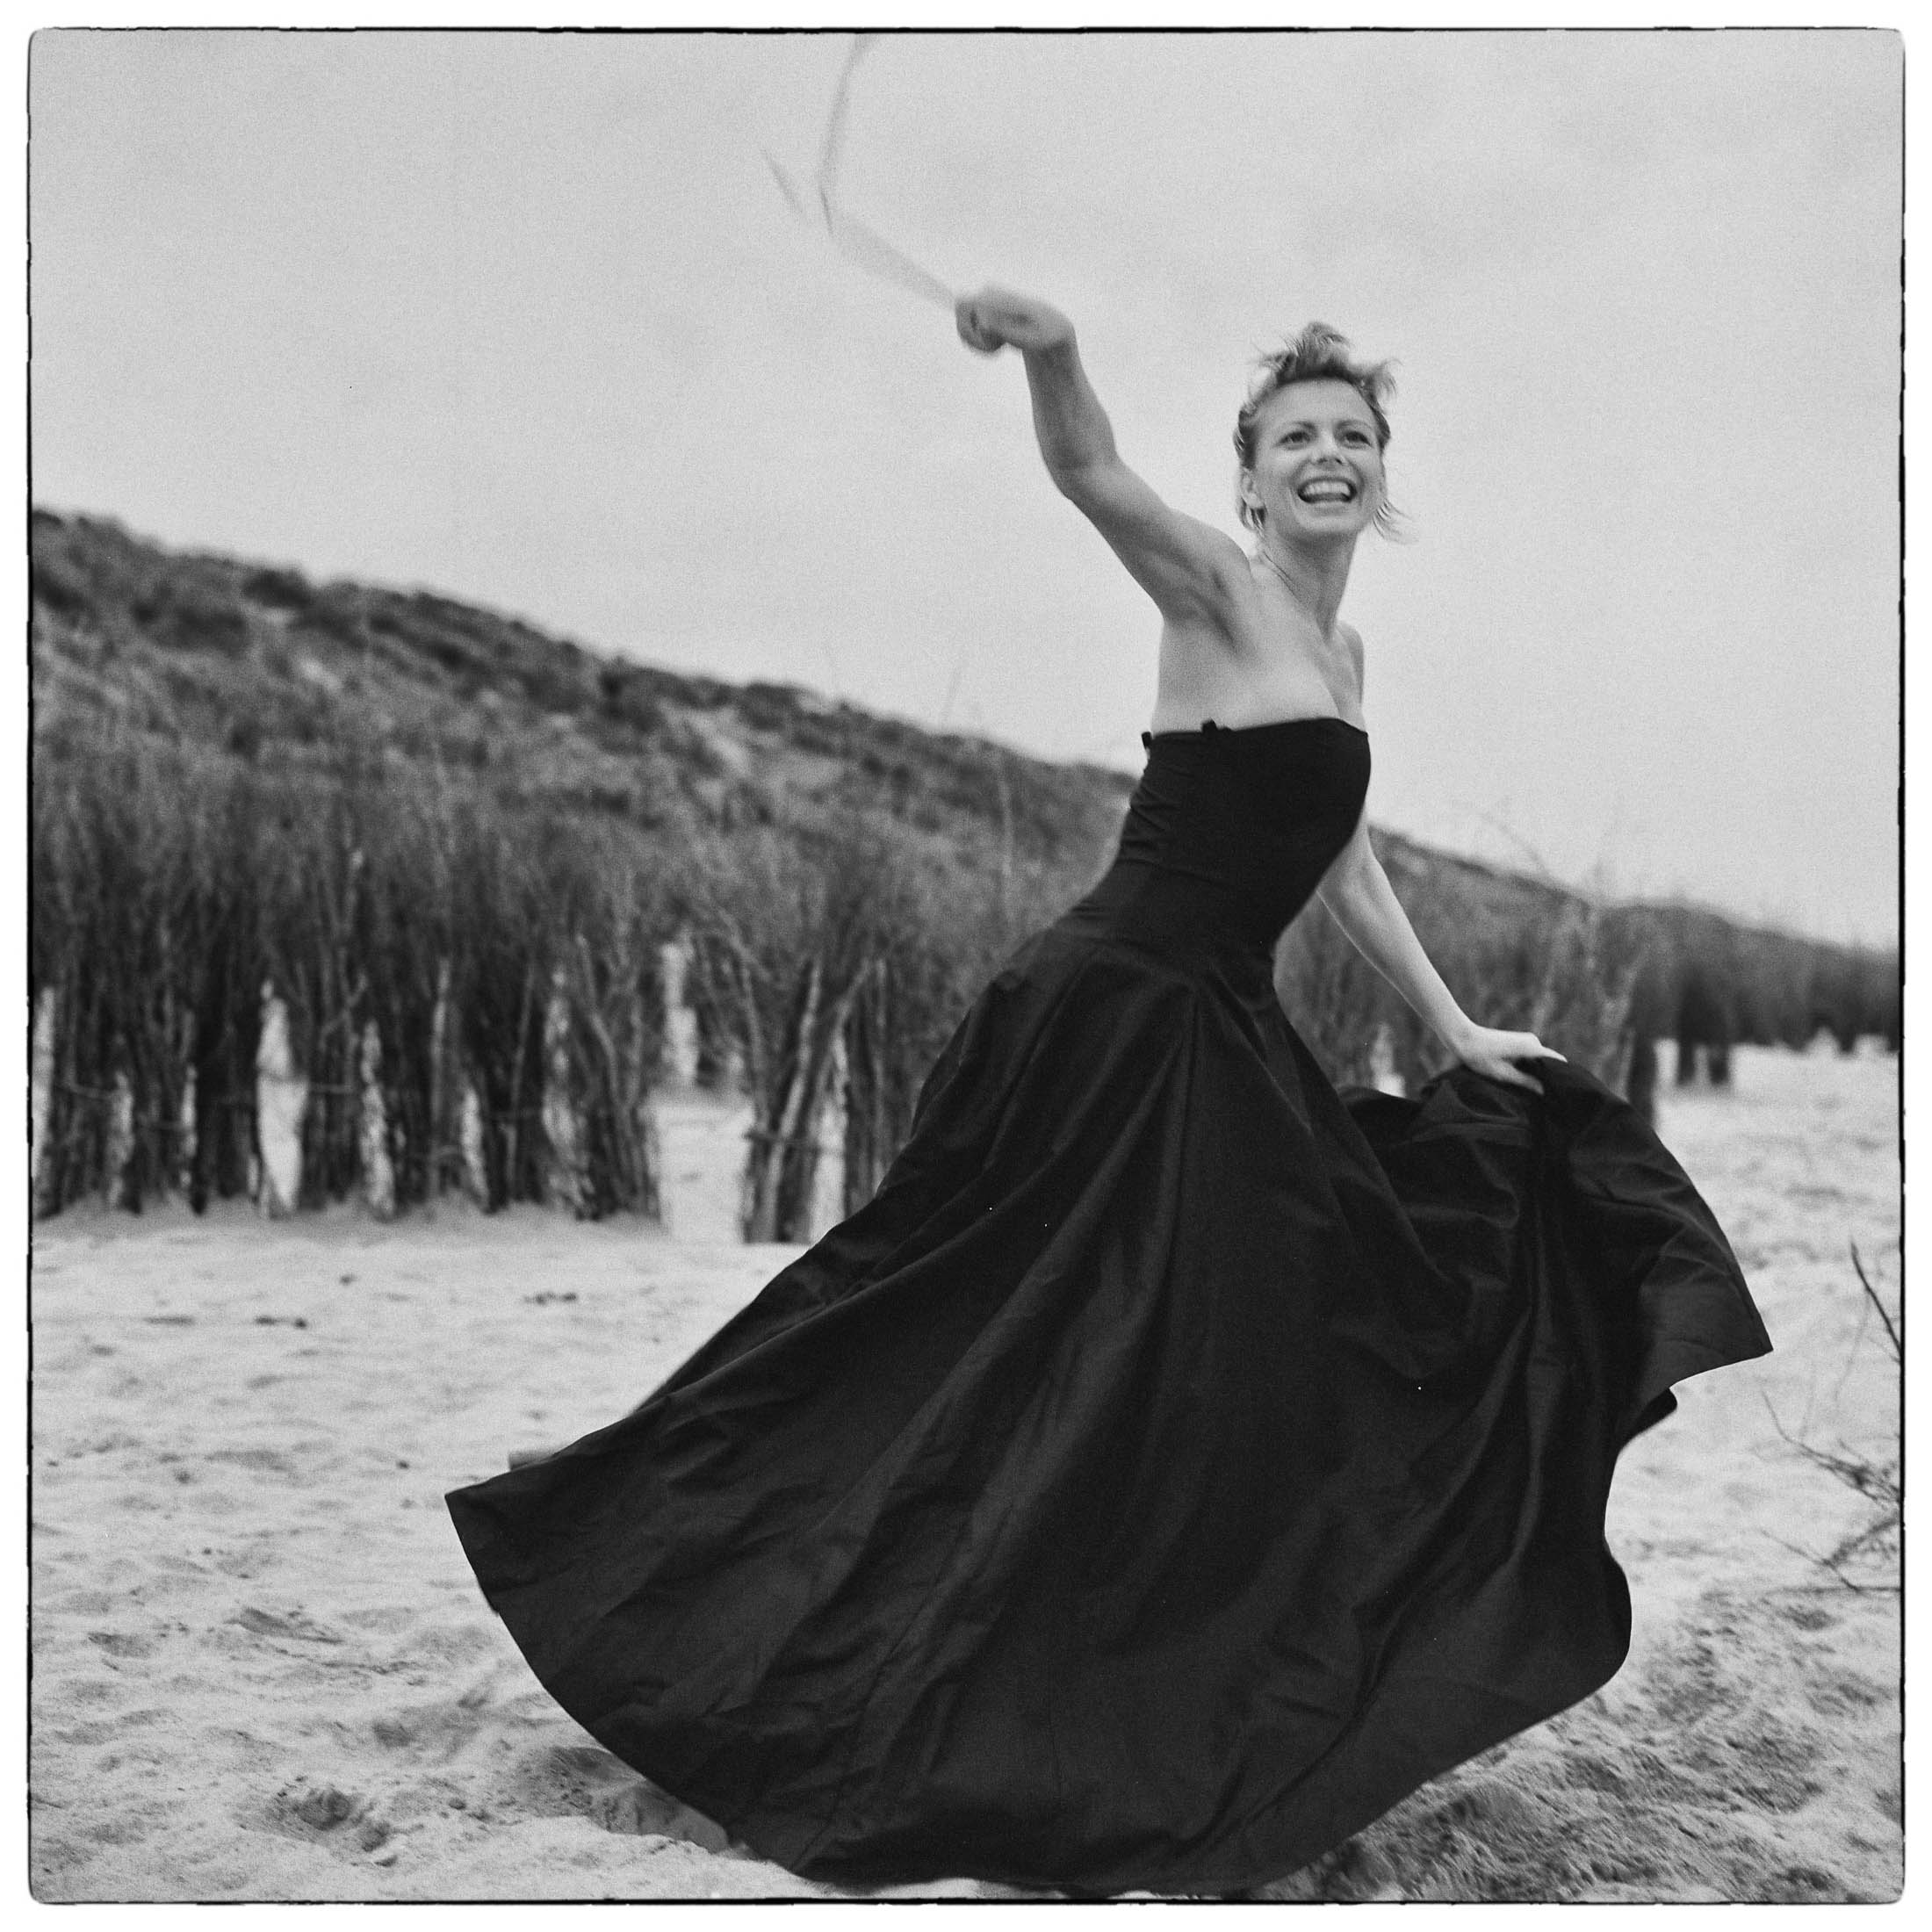 Eine fröhliche Frau in einem fließenden schwarzen Kleid wirbelt auf einem Sandstrand mit Dünen und spärlicher Vegetation im Hintergrund herum. Ihren Arm hat sie erhoben und hält ein dünnes Band. Ihr Gesichtsausdruck ist lebhaft und heiter. © Fotografie Tomas Rodriguez